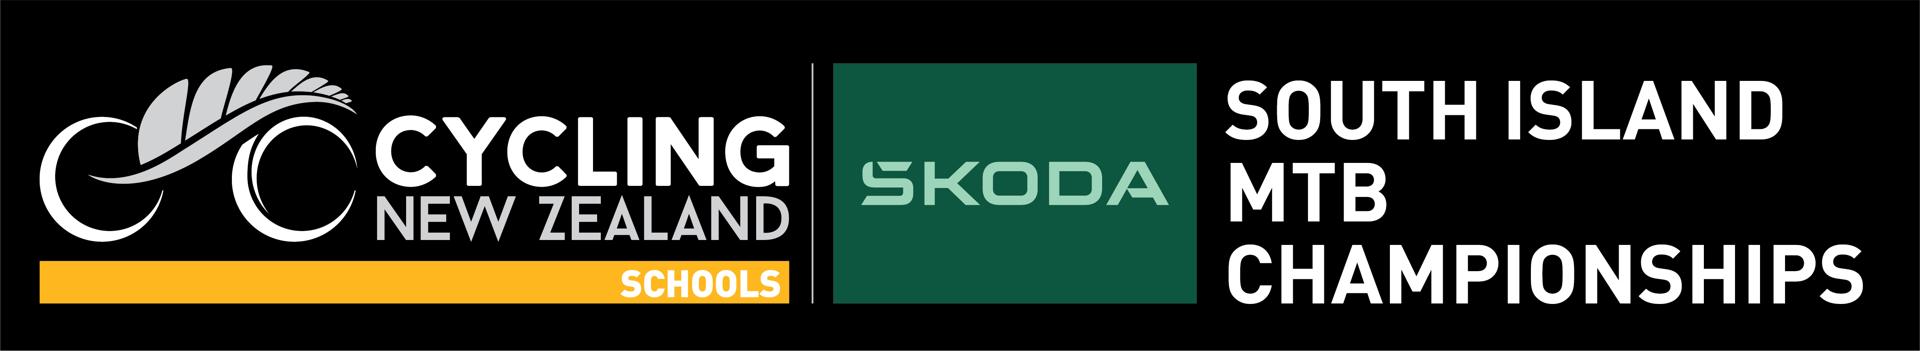 Skoda South Island School MTB Champs - Enduro Logo